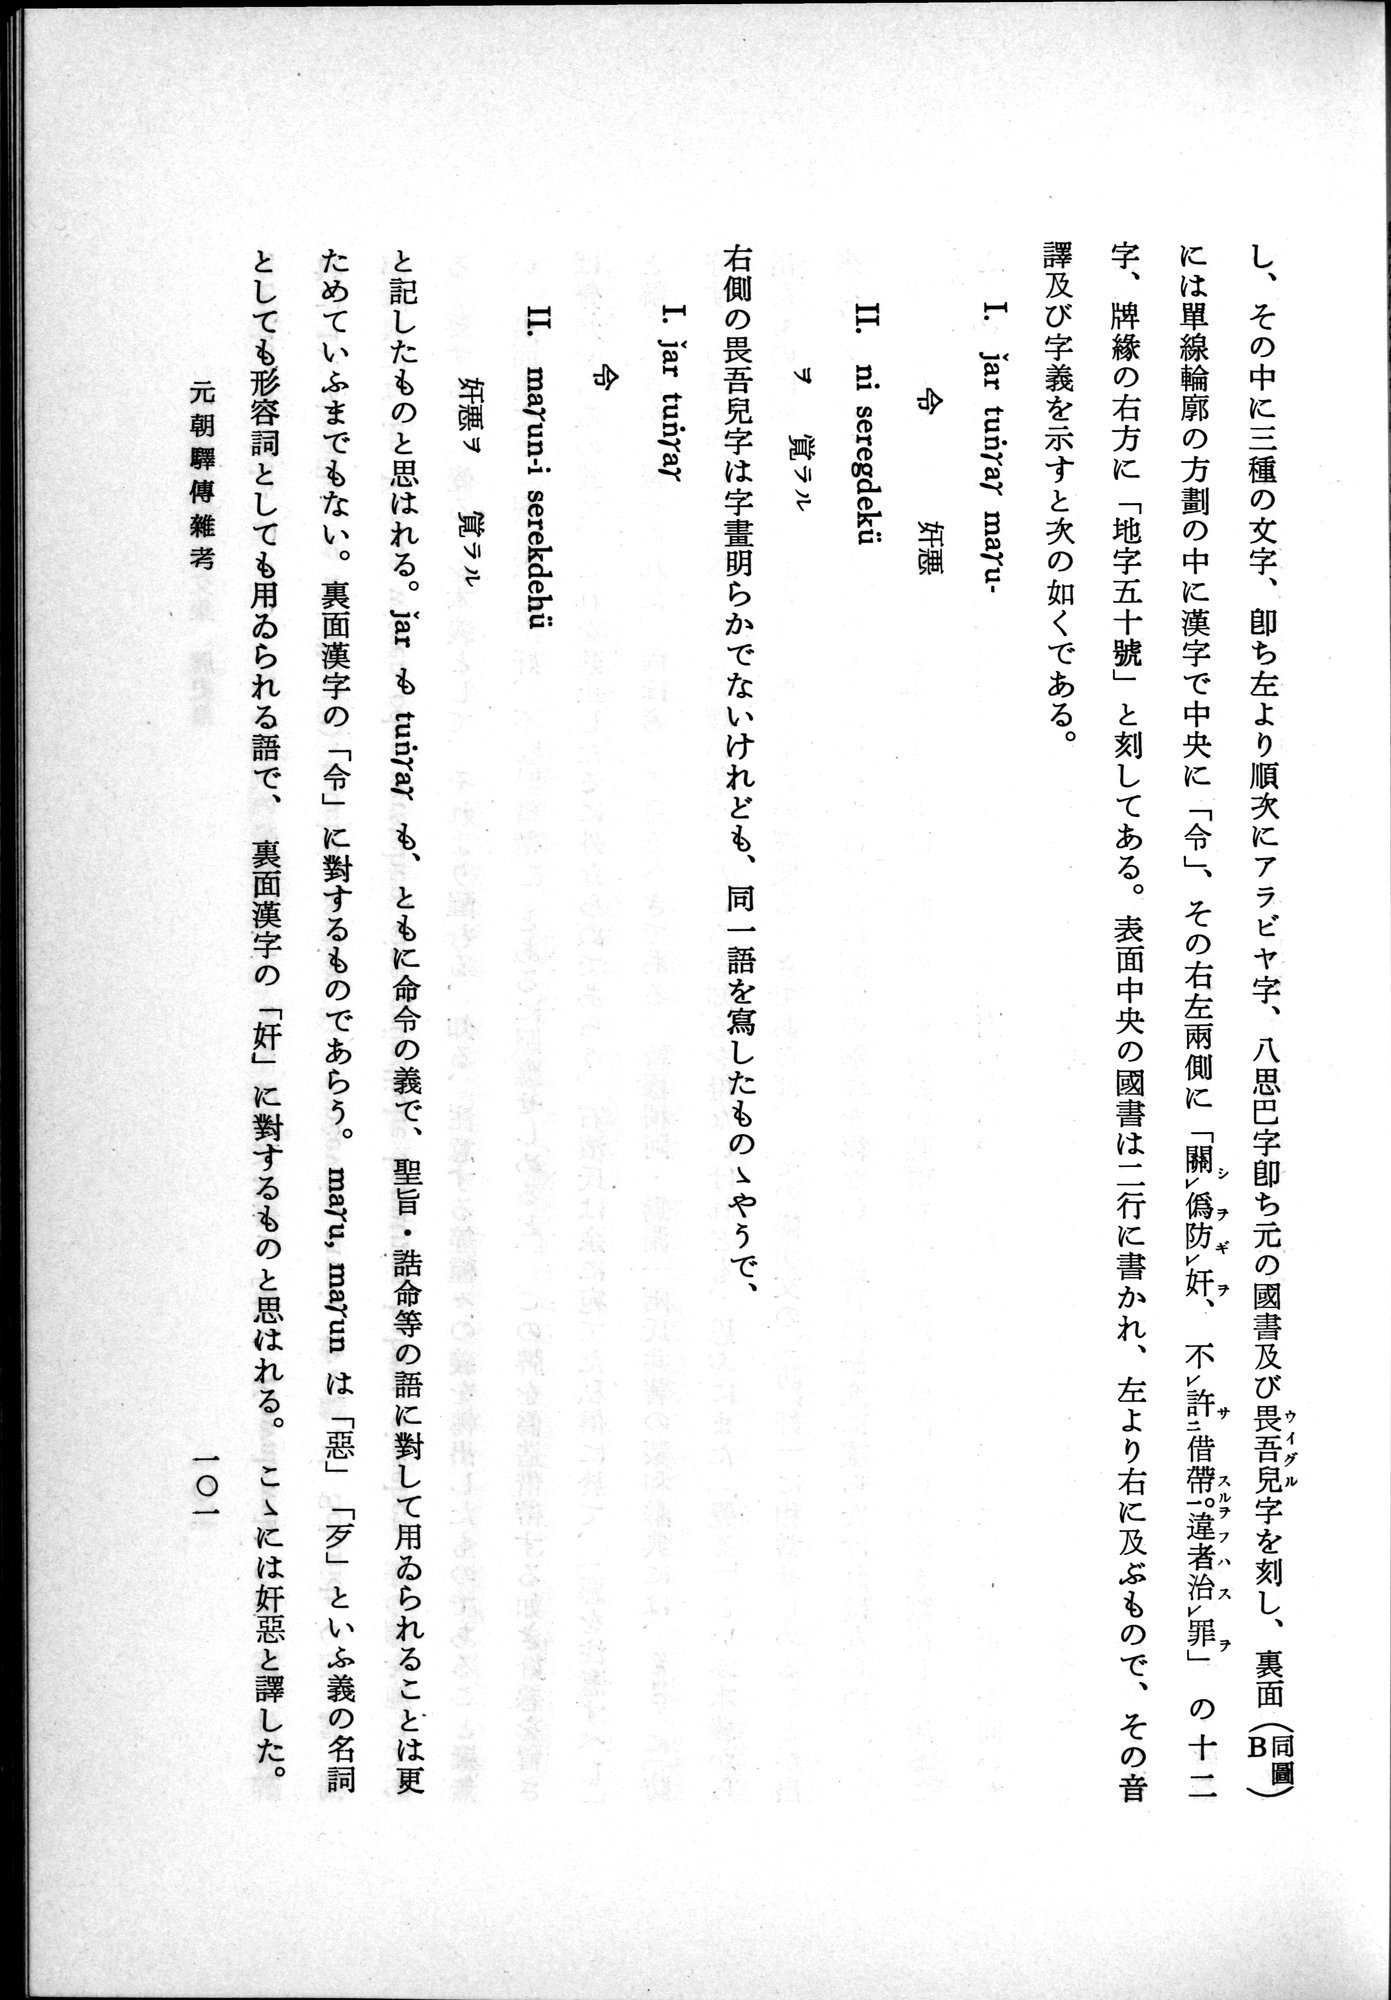 羽田博士史学論文集 : vol.1 / Page 139 (Grayscale High Resolution Image)